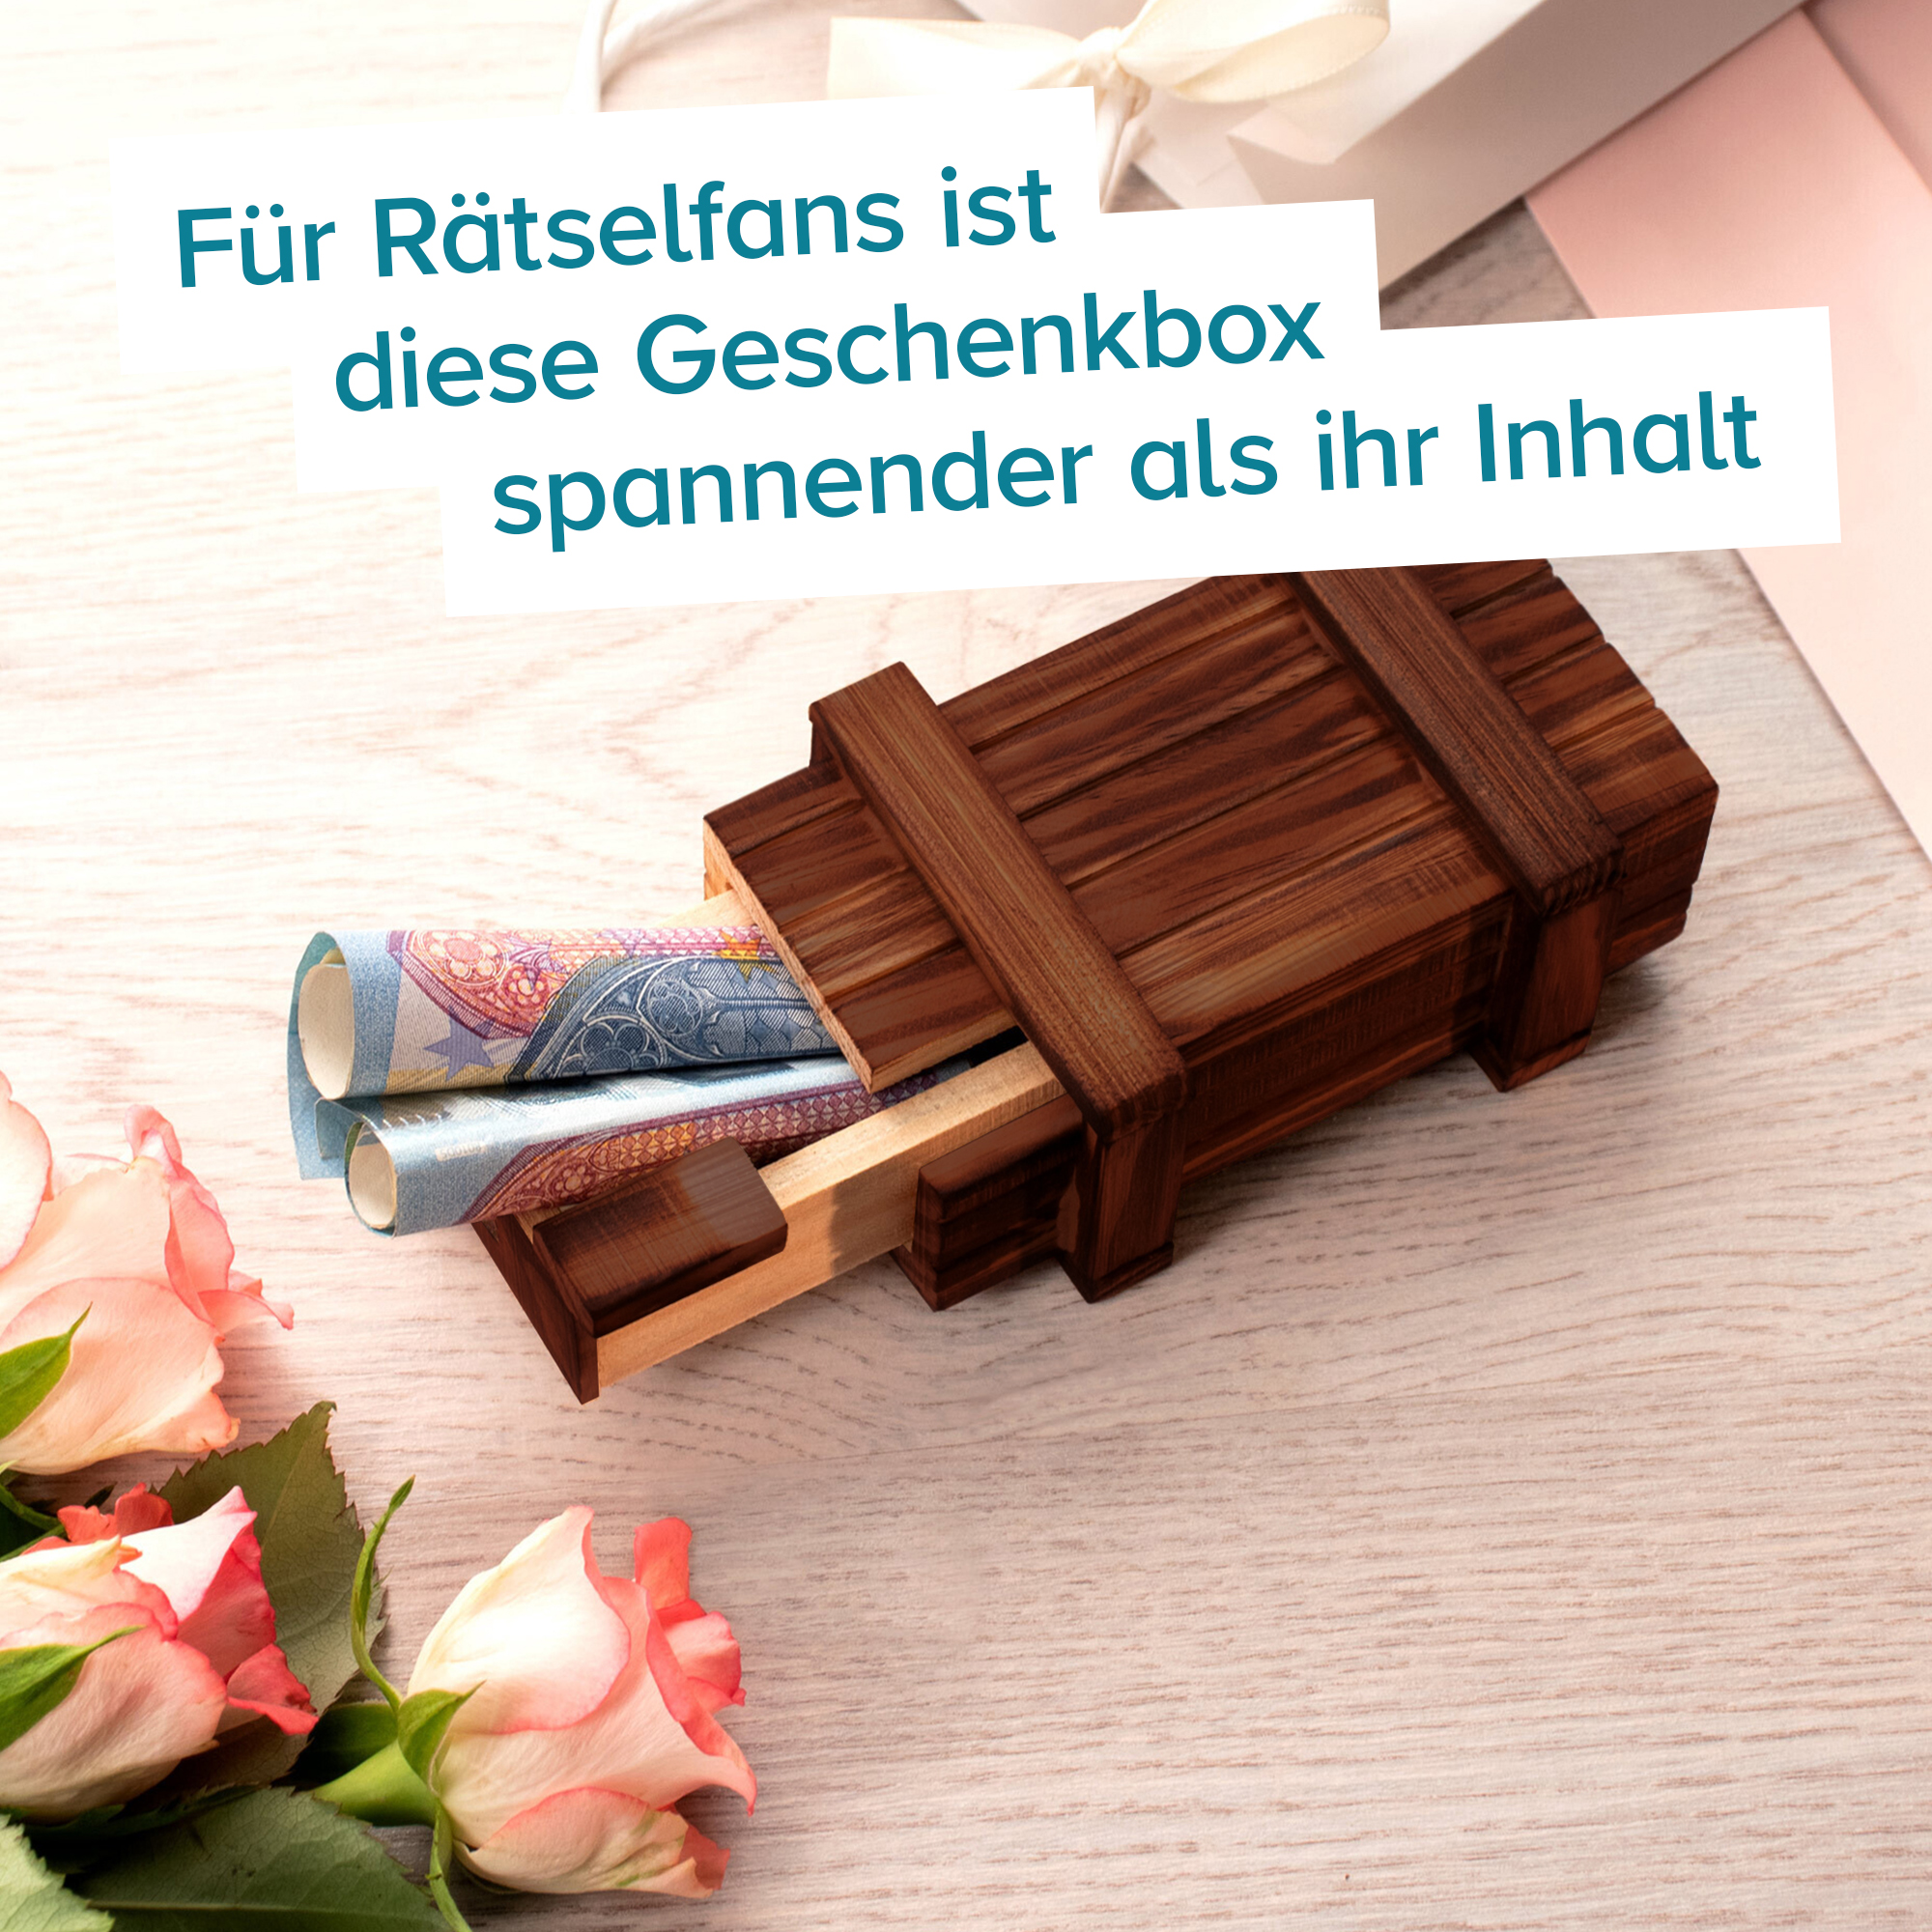 ECHT-HOLZ Trickkiste Geschenkbox Geldgeschenk Hochzeit Geburtstag Party Box 